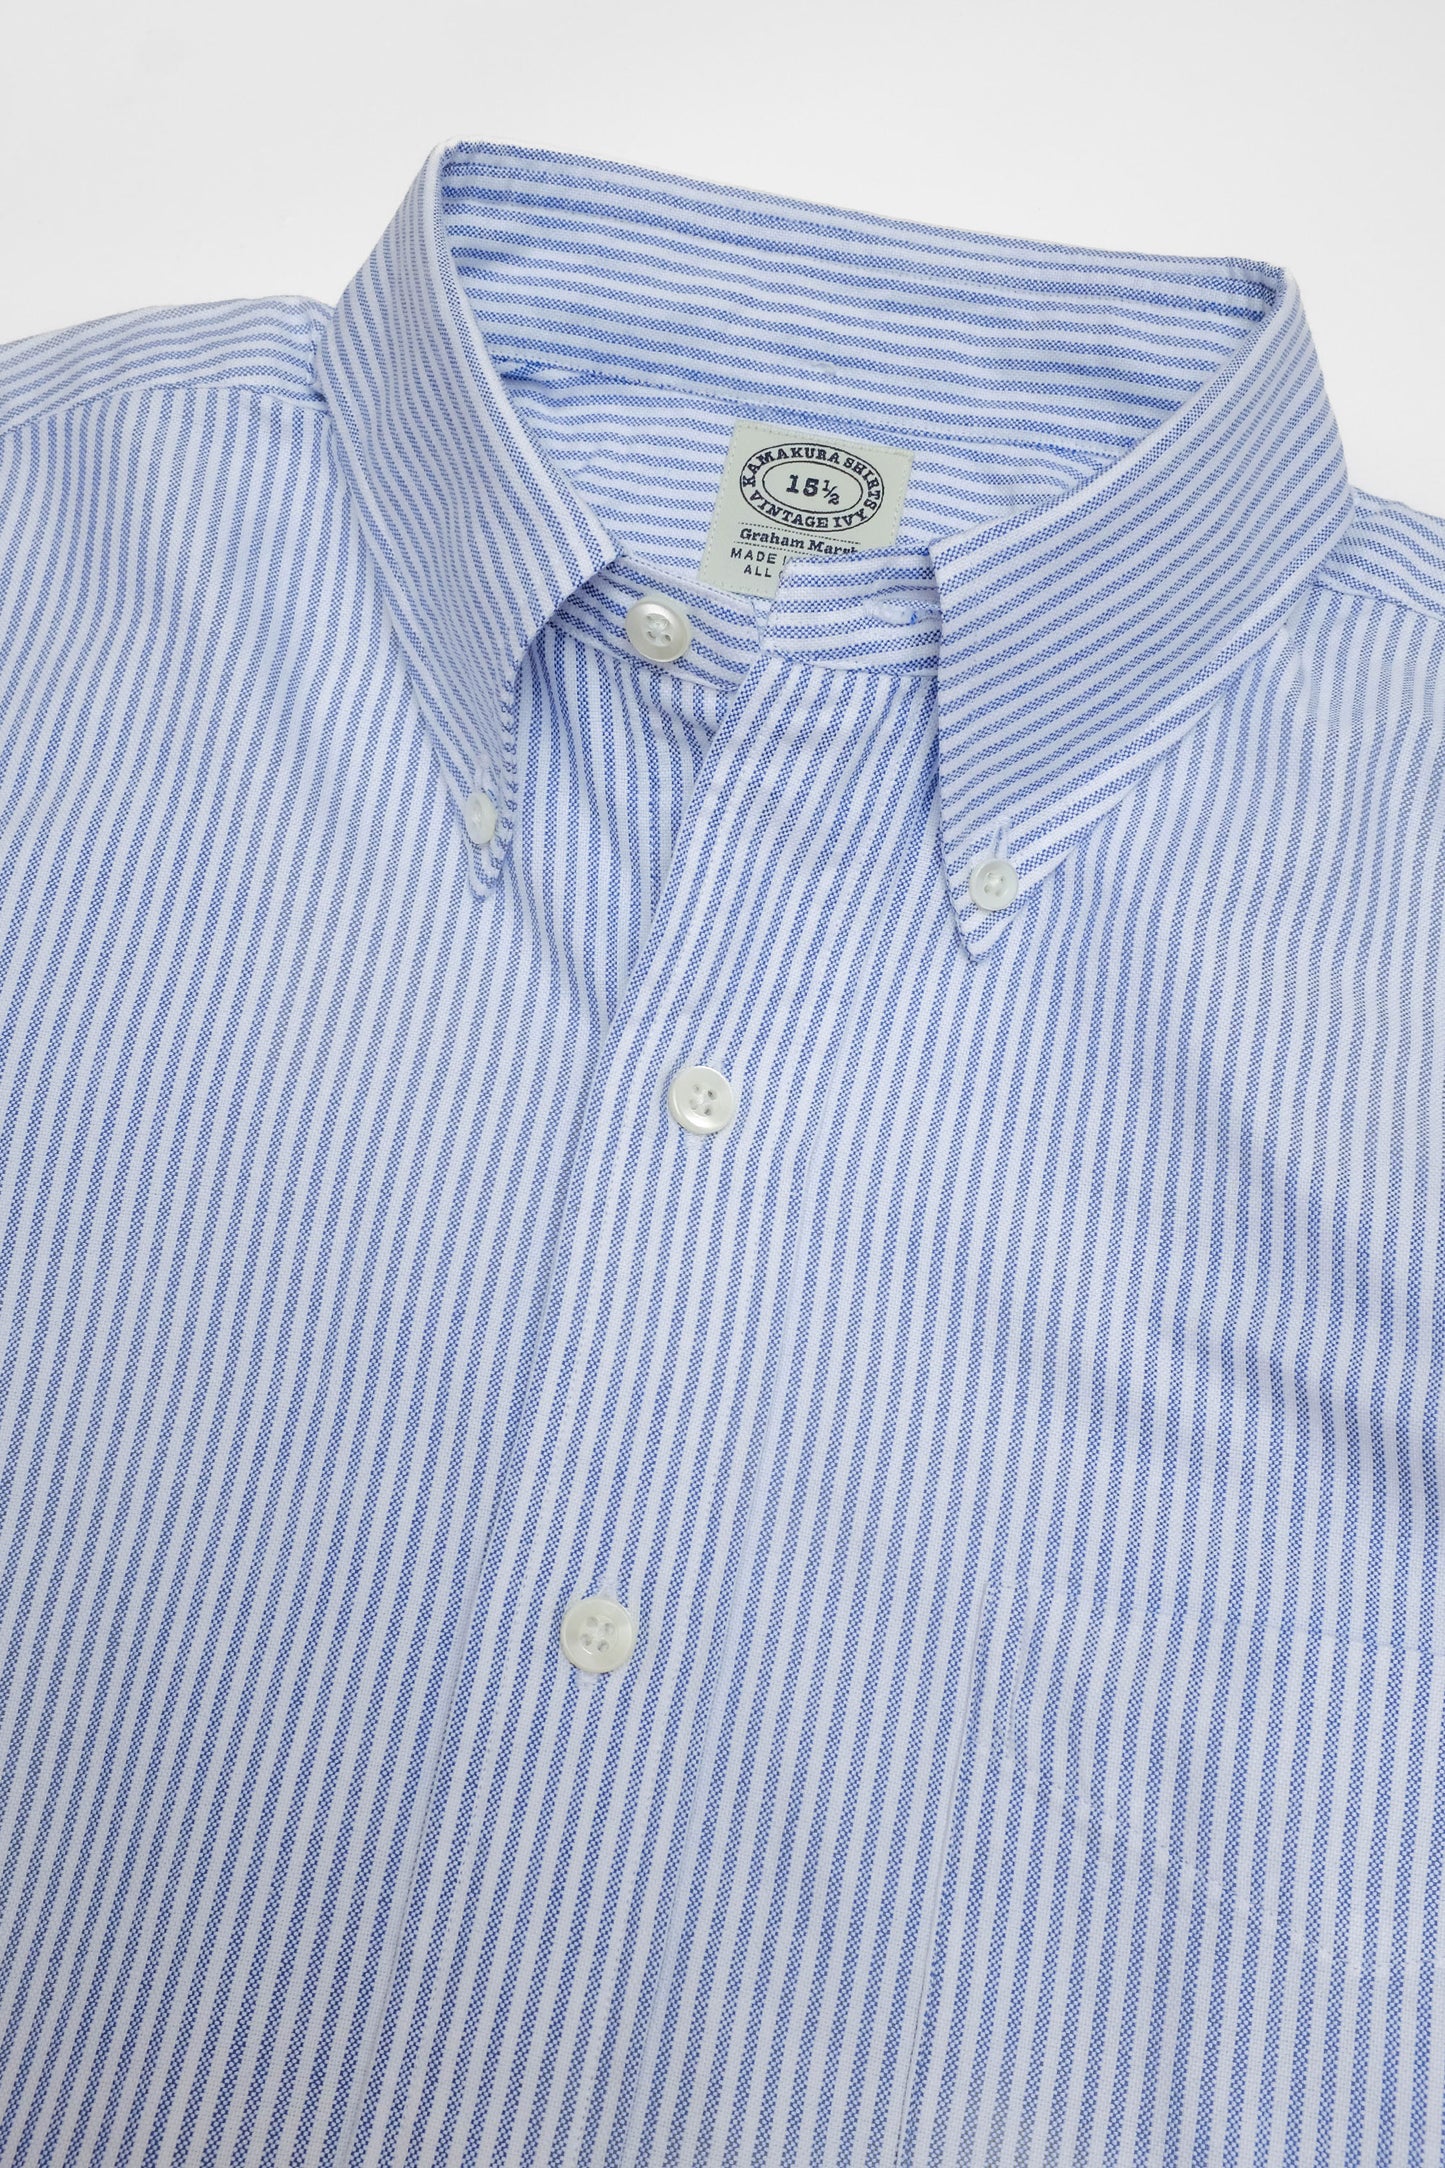 Vintage Ivy' Oxford Shirt - Blue Stripes